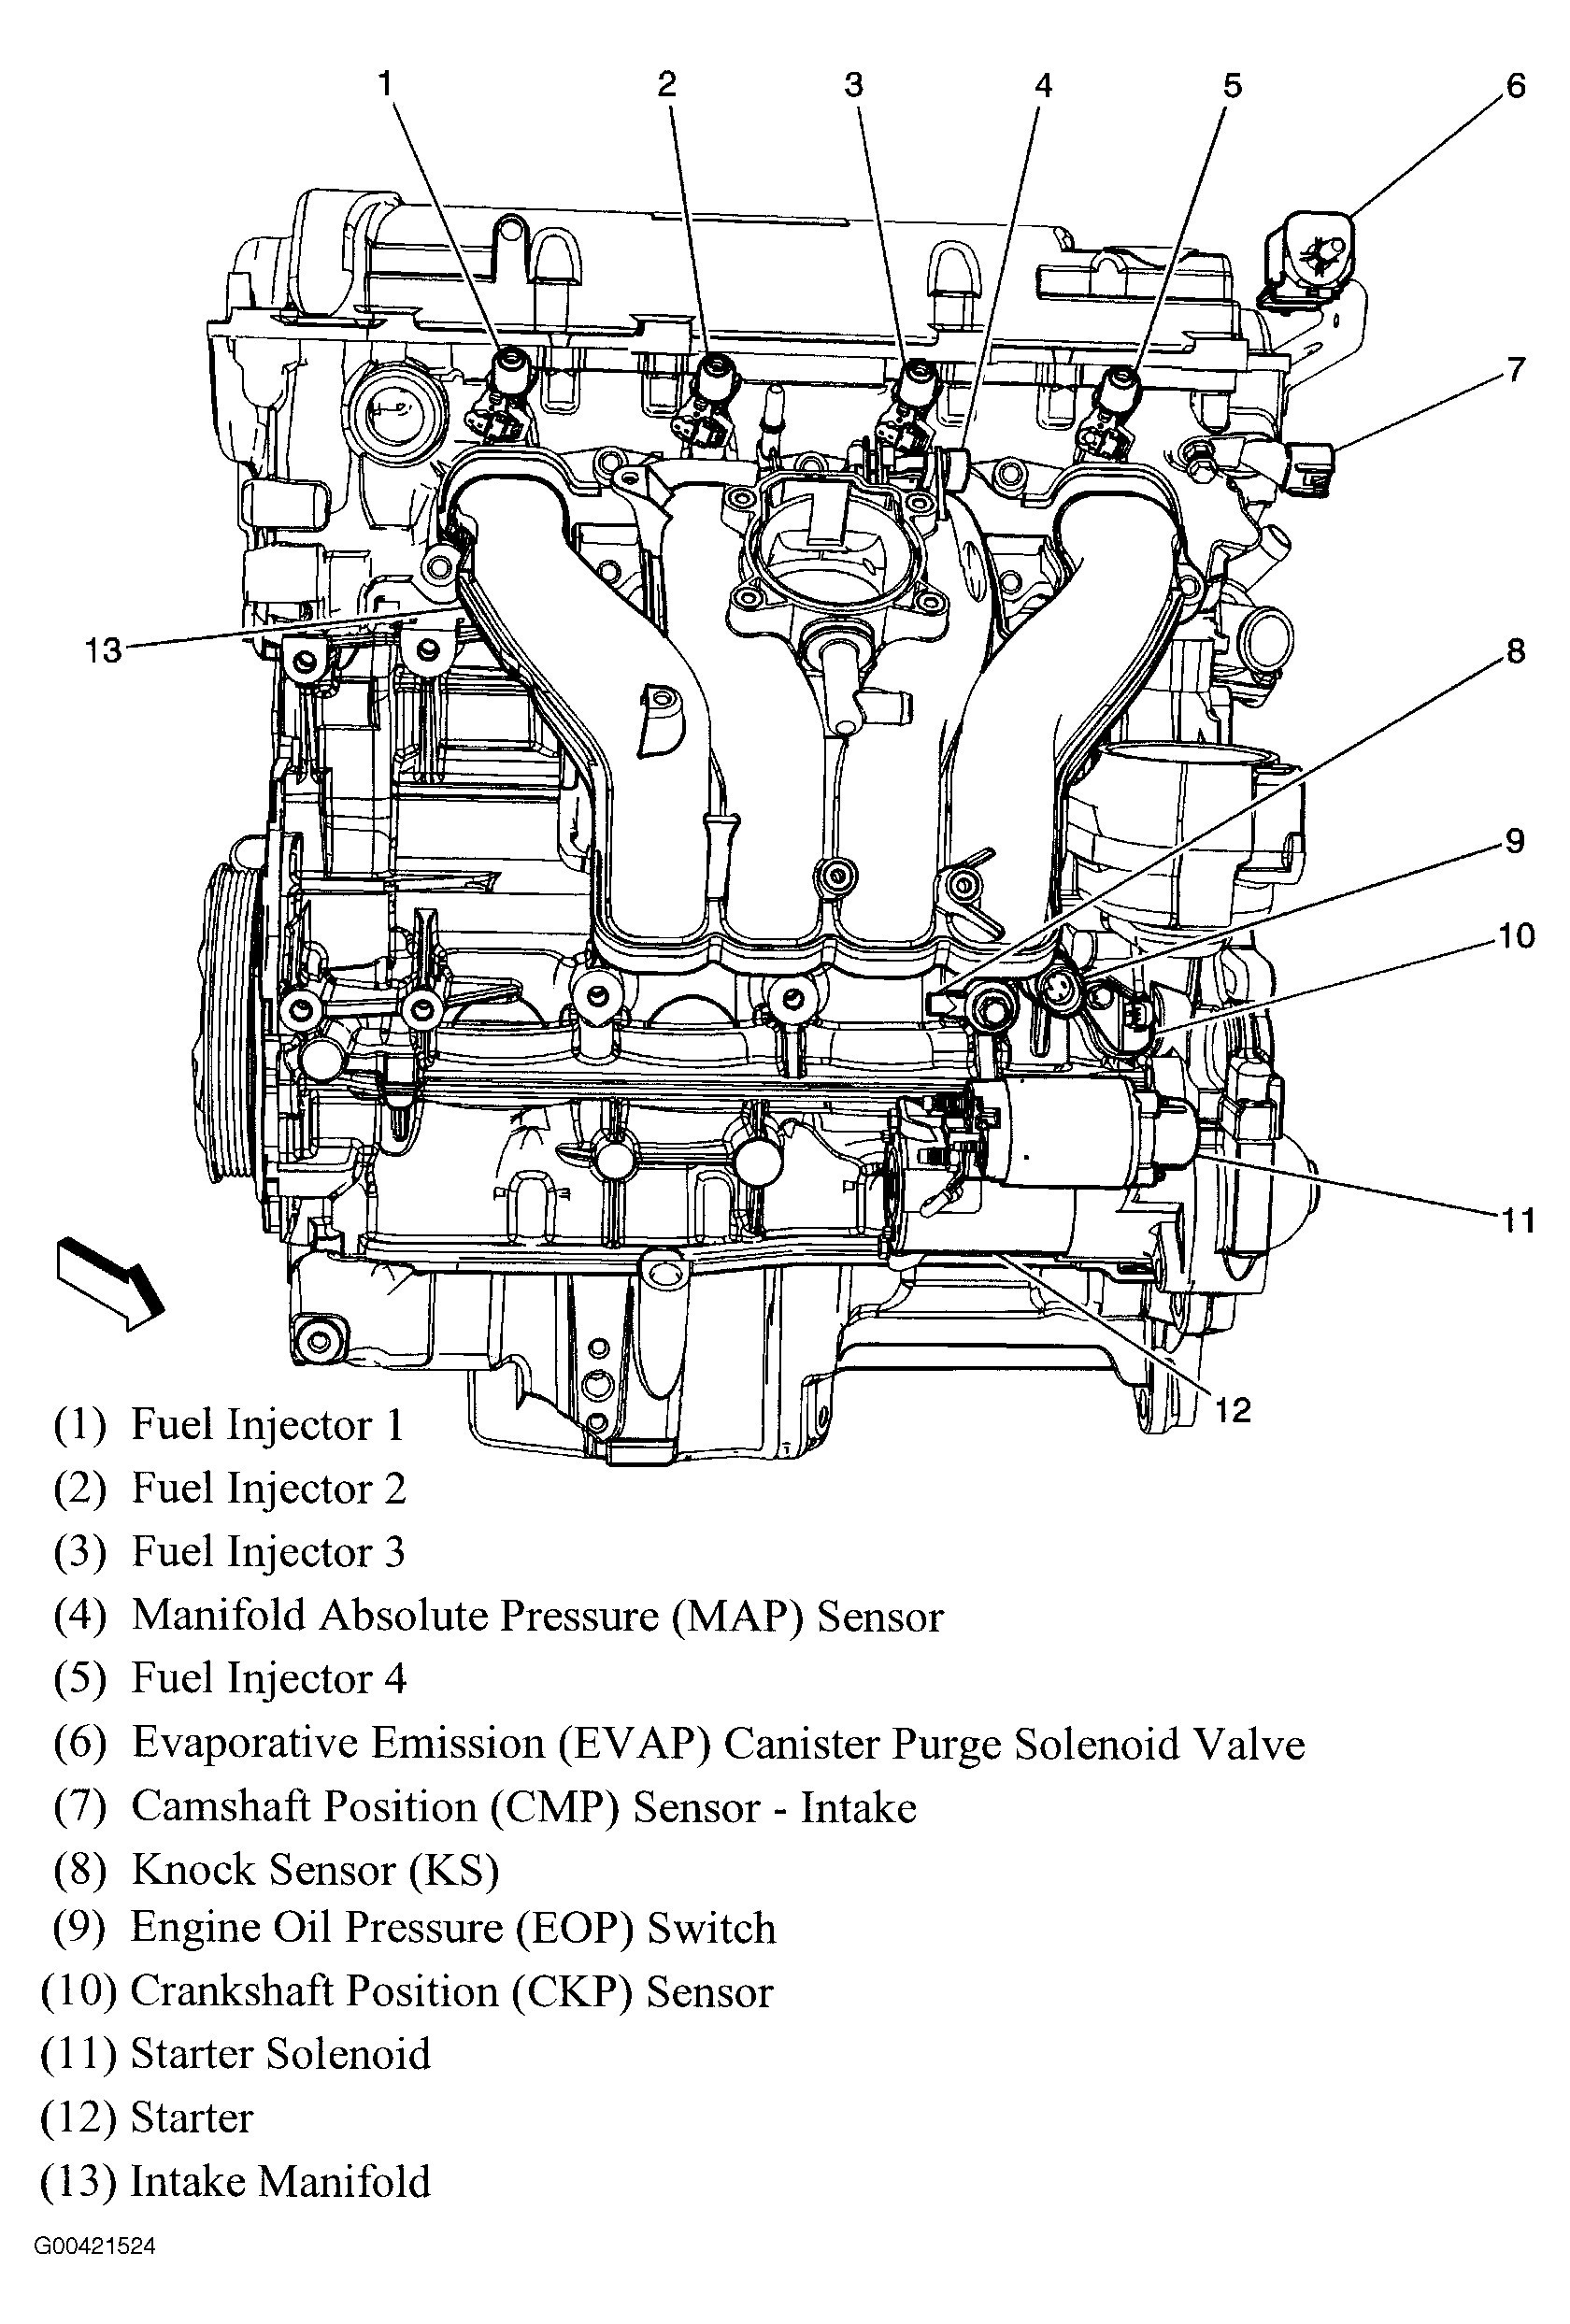 2.2l Ecotec Engine Diagram Diagram] 2 2 Liter Chevrolet Engine Diagram Full Version Hd Of 2.2l Ecotec Engine Diagram